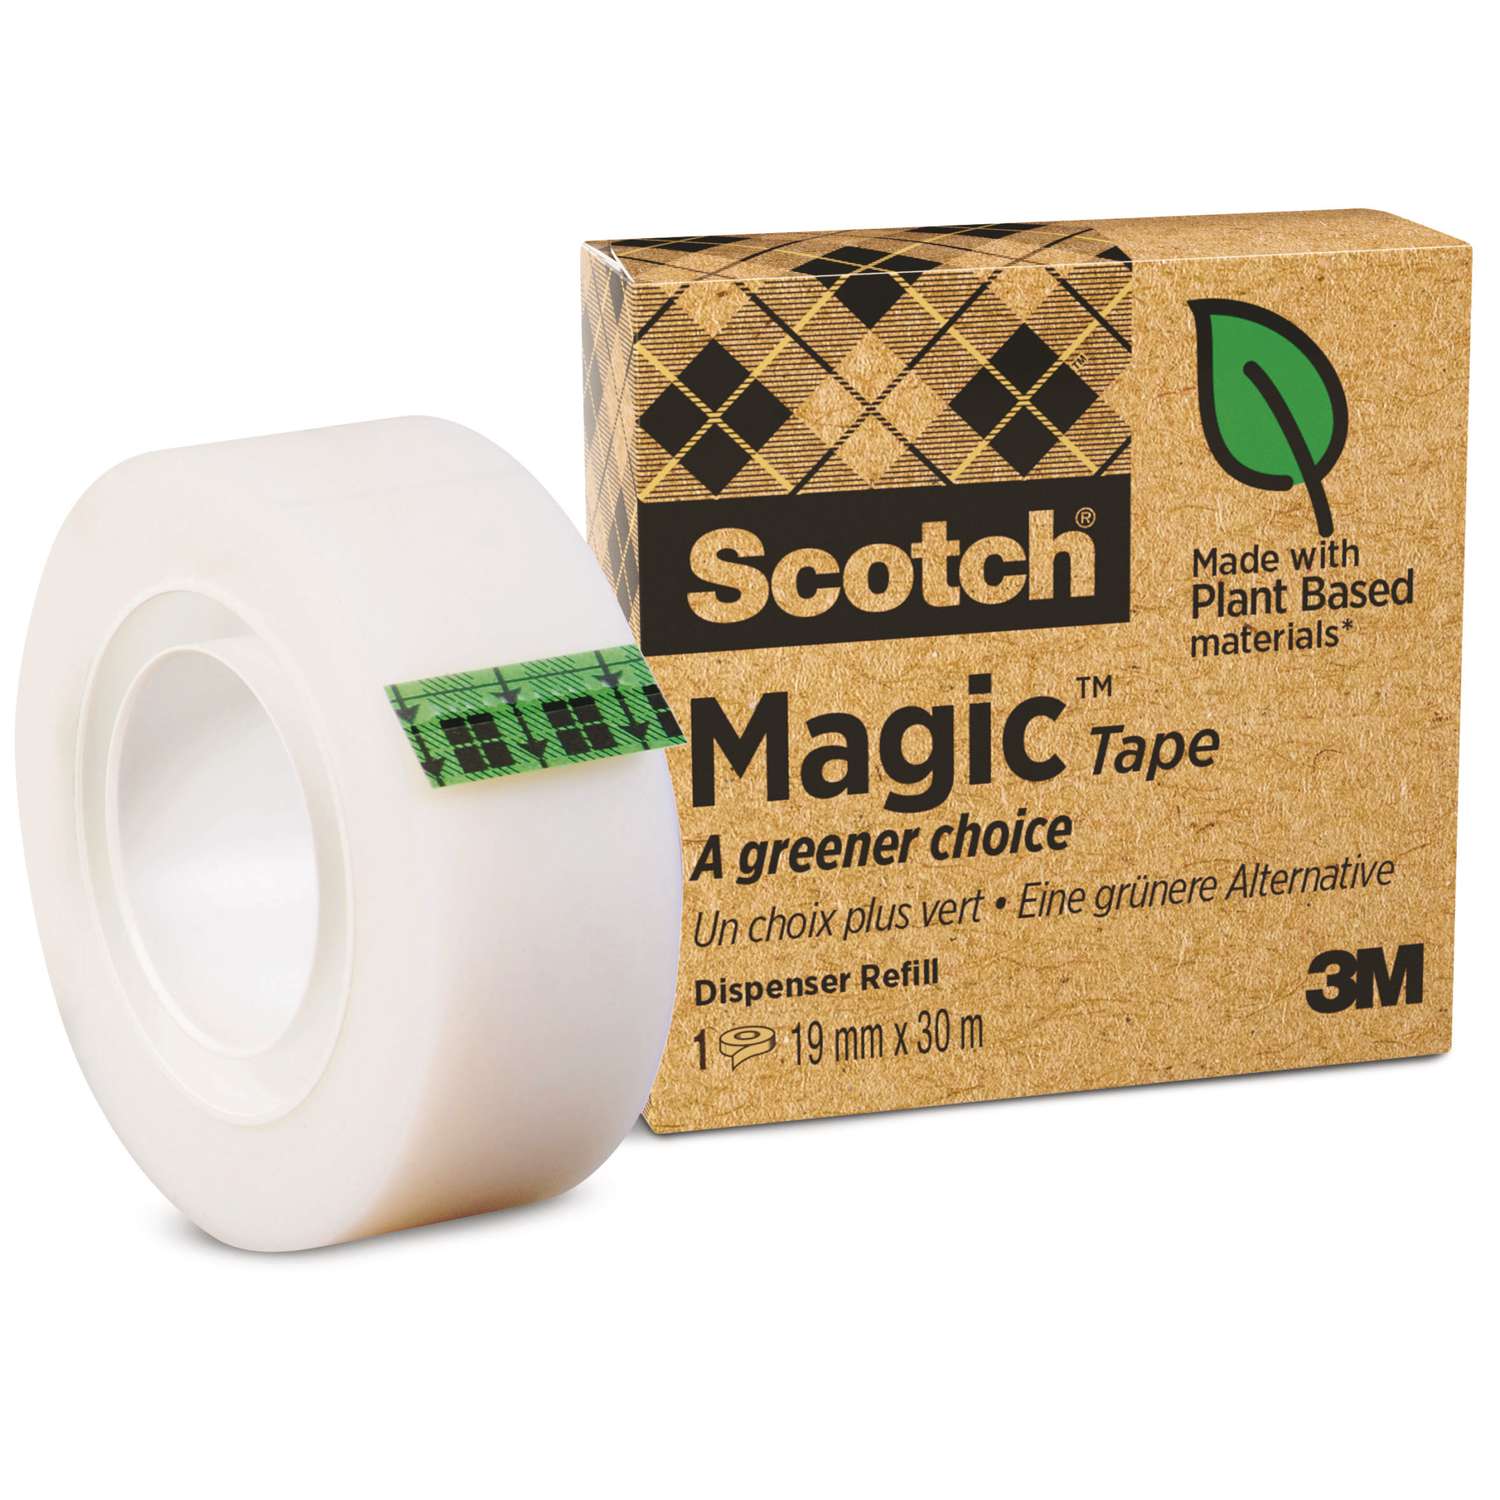 Рейтинг скотча. Scotch Double Sided Tape. Scotch Magic Tape poster.